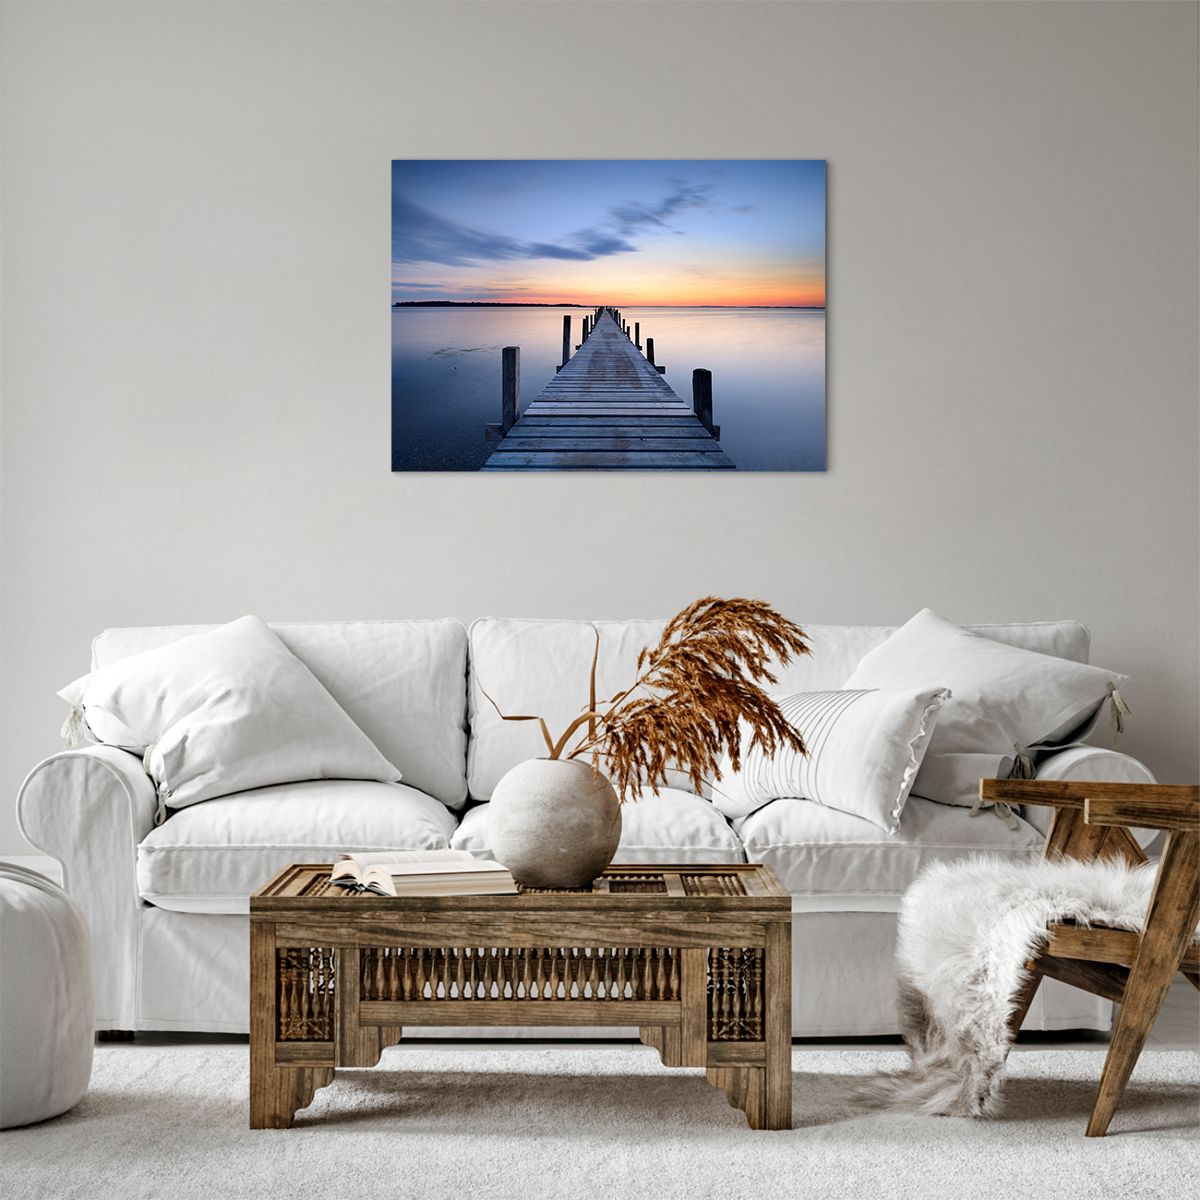 Bild auf Leinwand Landschaft, Bild auf Leinwand Bucht, Bild auf Leinwand Holzbrücke, Bild auf Leinwand Der Sonnenuntergang, Bild auf Leinwand Morgen